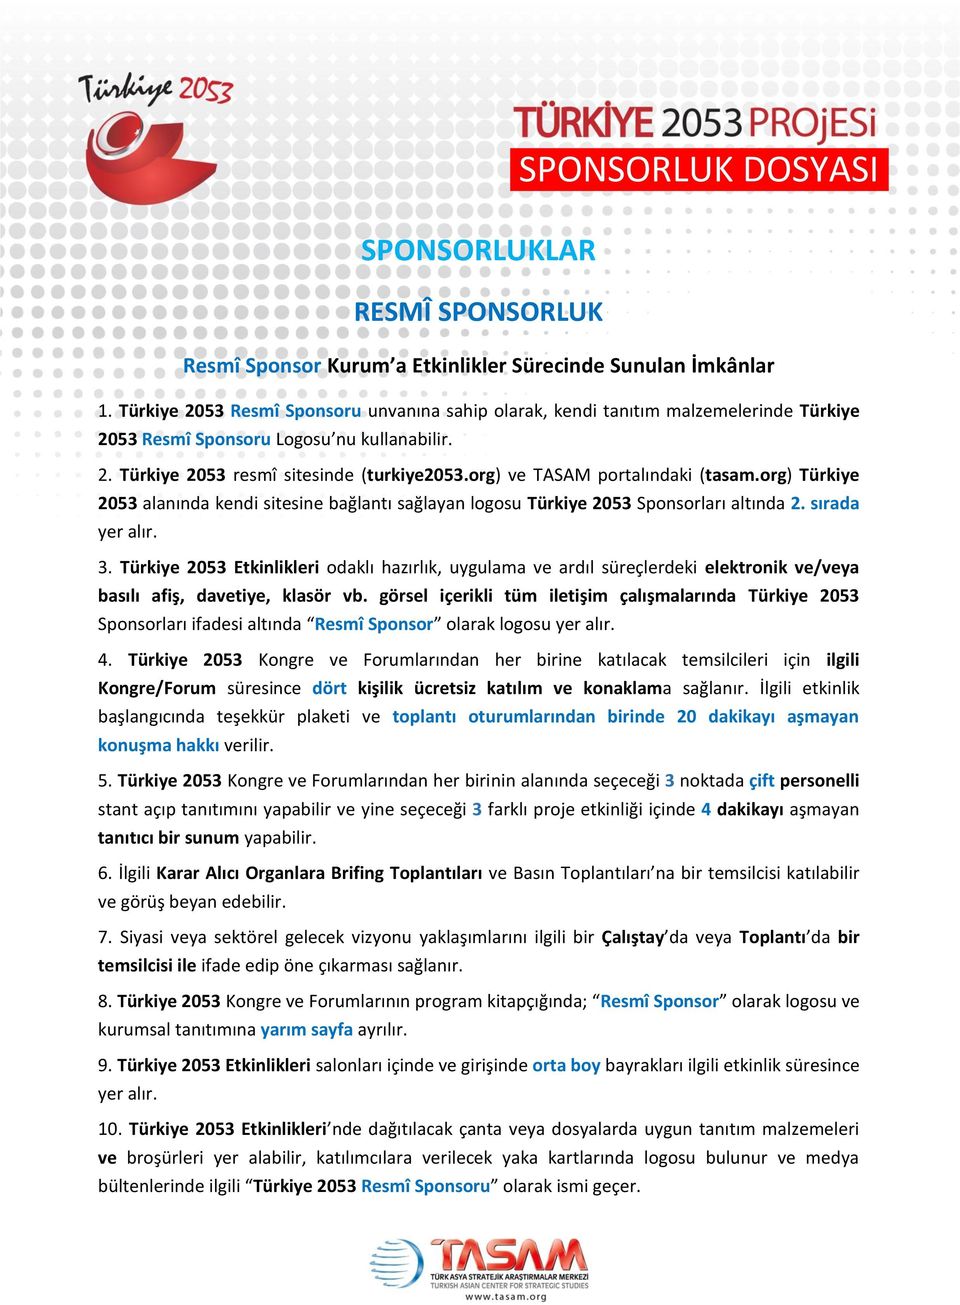 org) ve TASAM portalındaki (tasam.org) Türkiye 2053 alanında kendi sitesine bağlantı sağlayan logosu Türkiye 2053 Sponsorları altında 2. sırada 3.